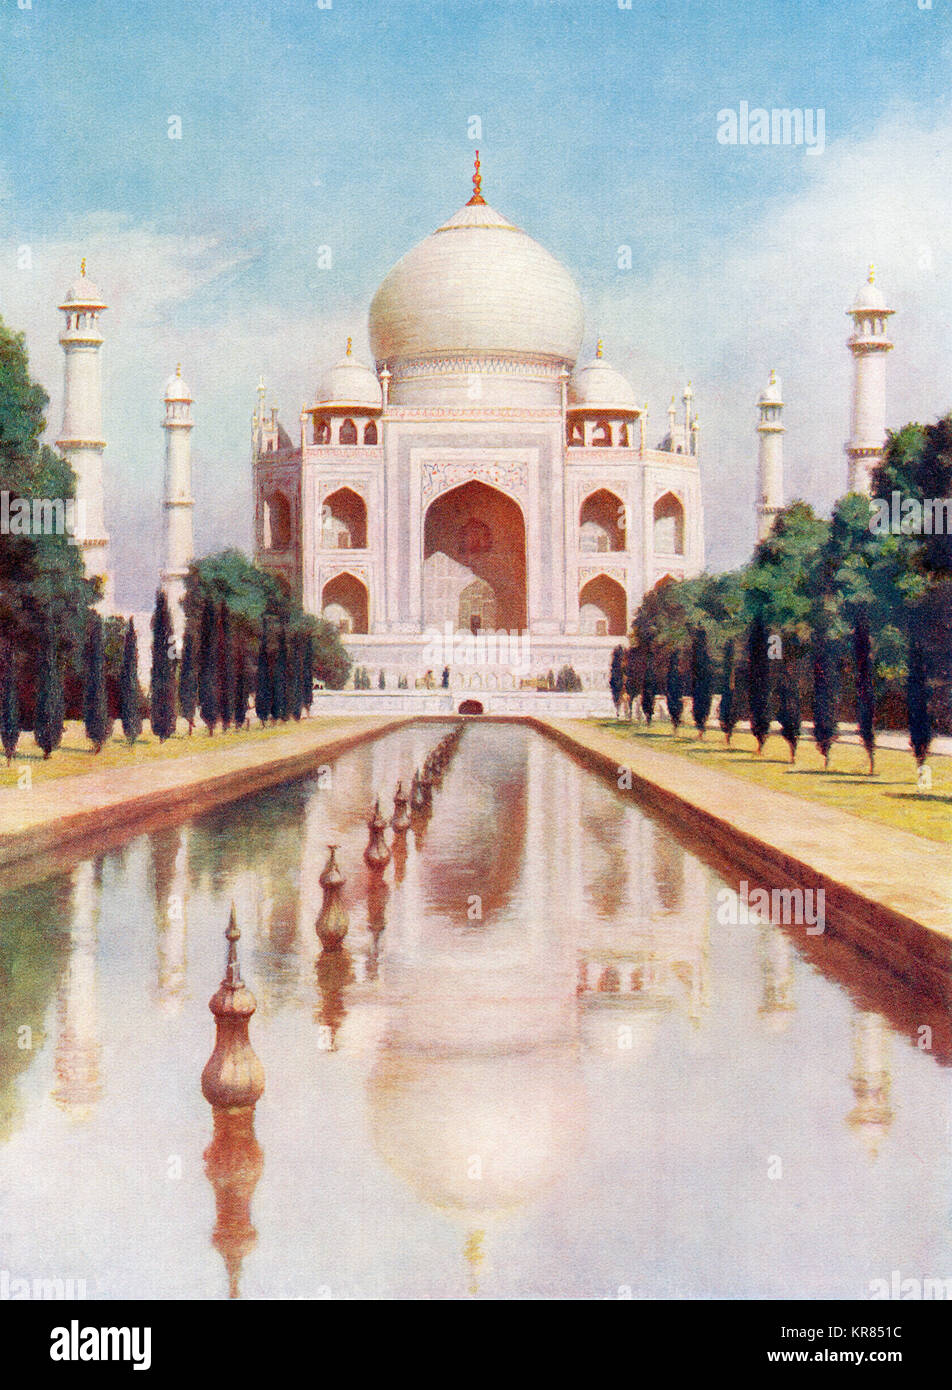 Le Taj-Mahal, Agra, Uttar Pradesh, Inde. Elle a été commandée en 1632 par l'empereur Moghol Shah Jahan, maison à la tombe de son épouse favorite, Mumtaz Mahal. Des merveilles du monde, publié vers 1920. Banque D'Images